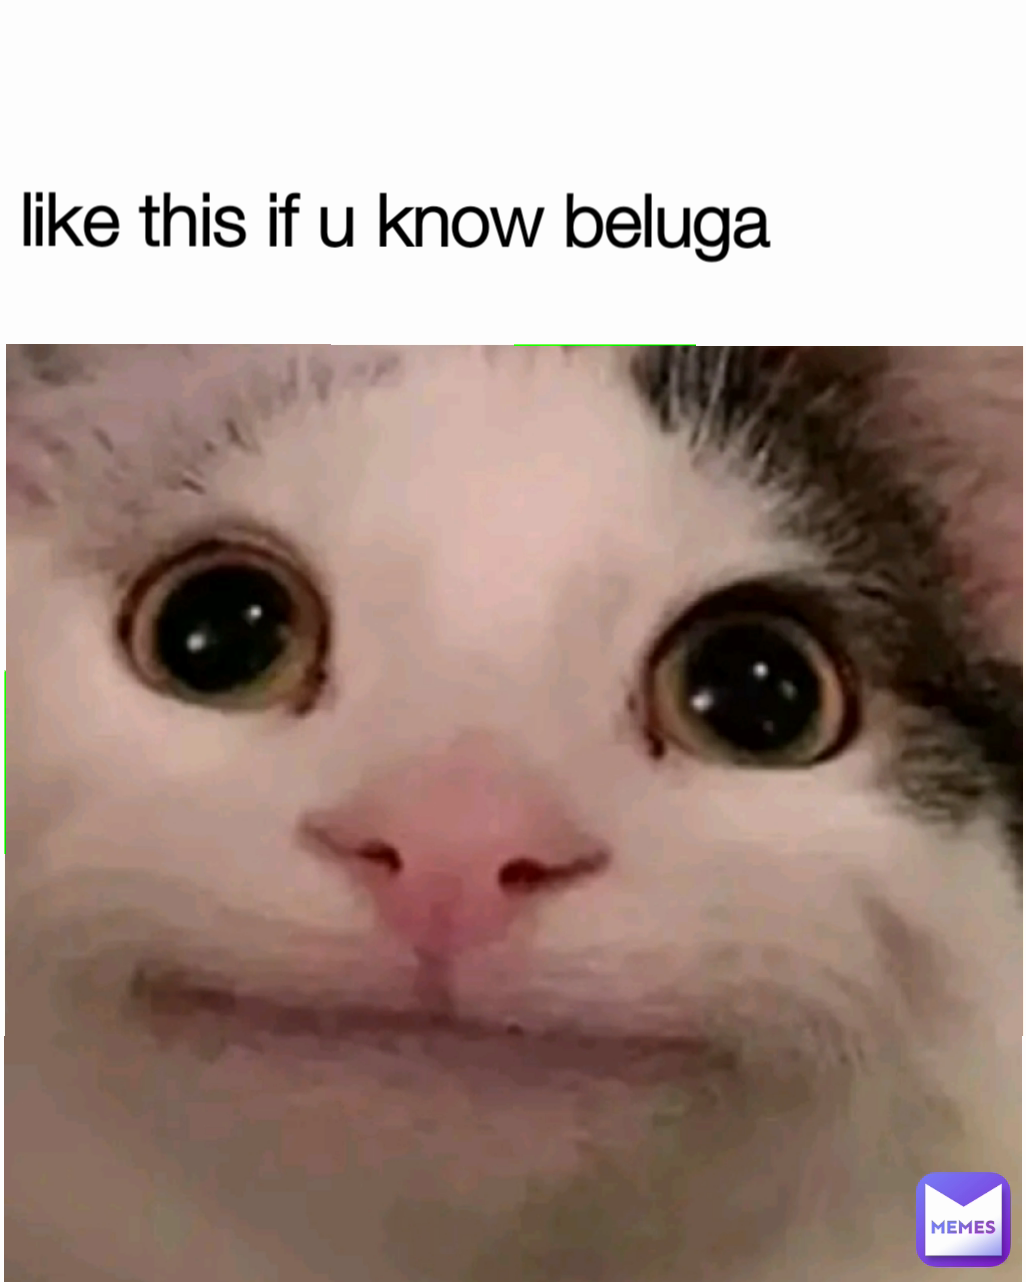 like this if u know beluga